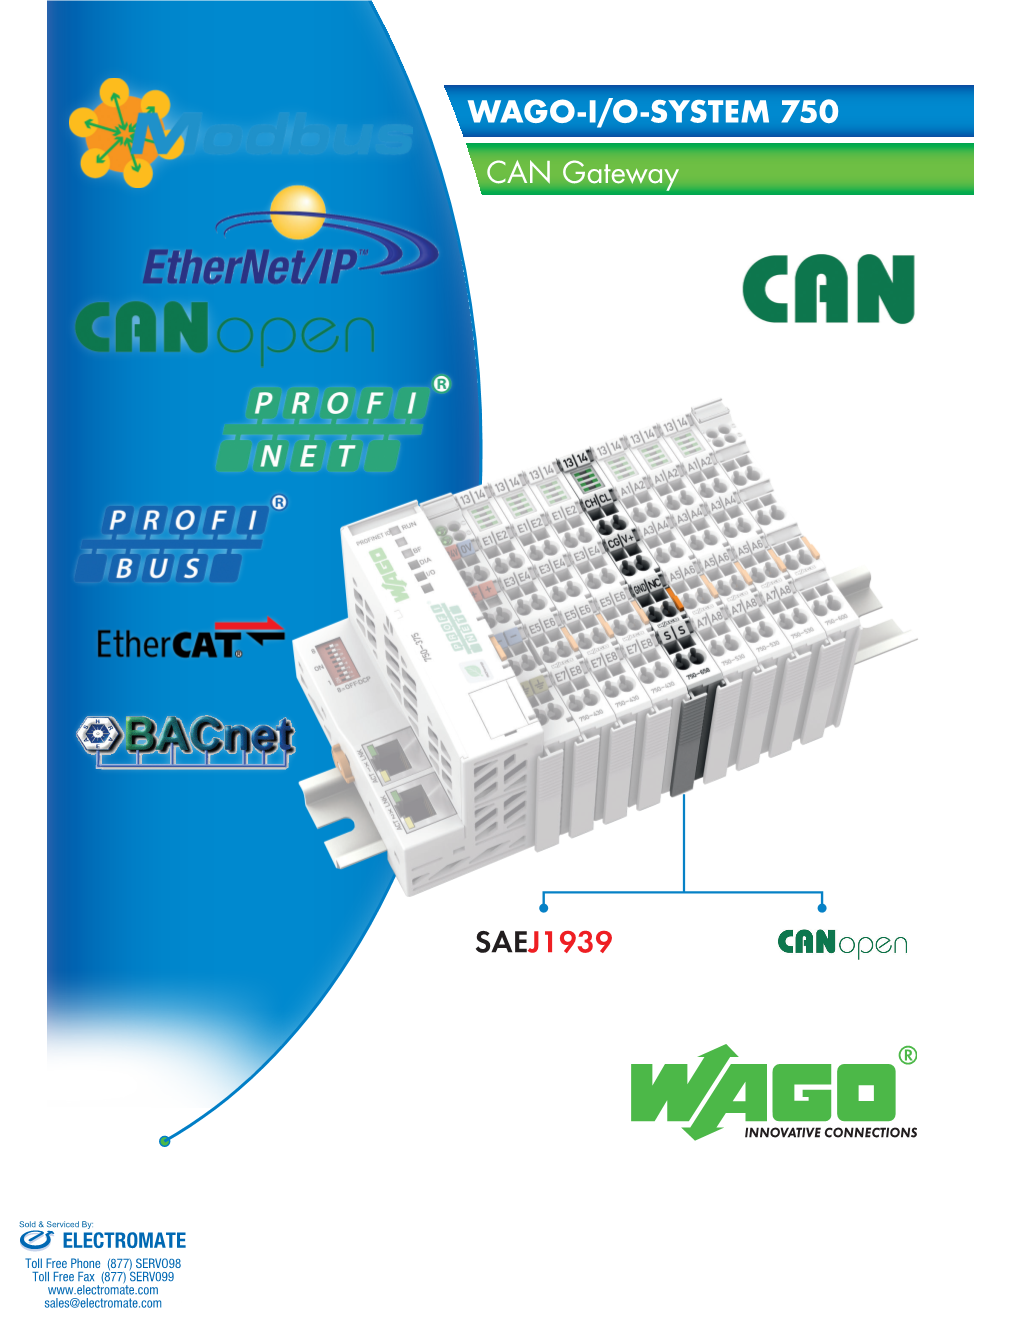 WAGO-I/O-SYSTEM 750 CAN Gateway